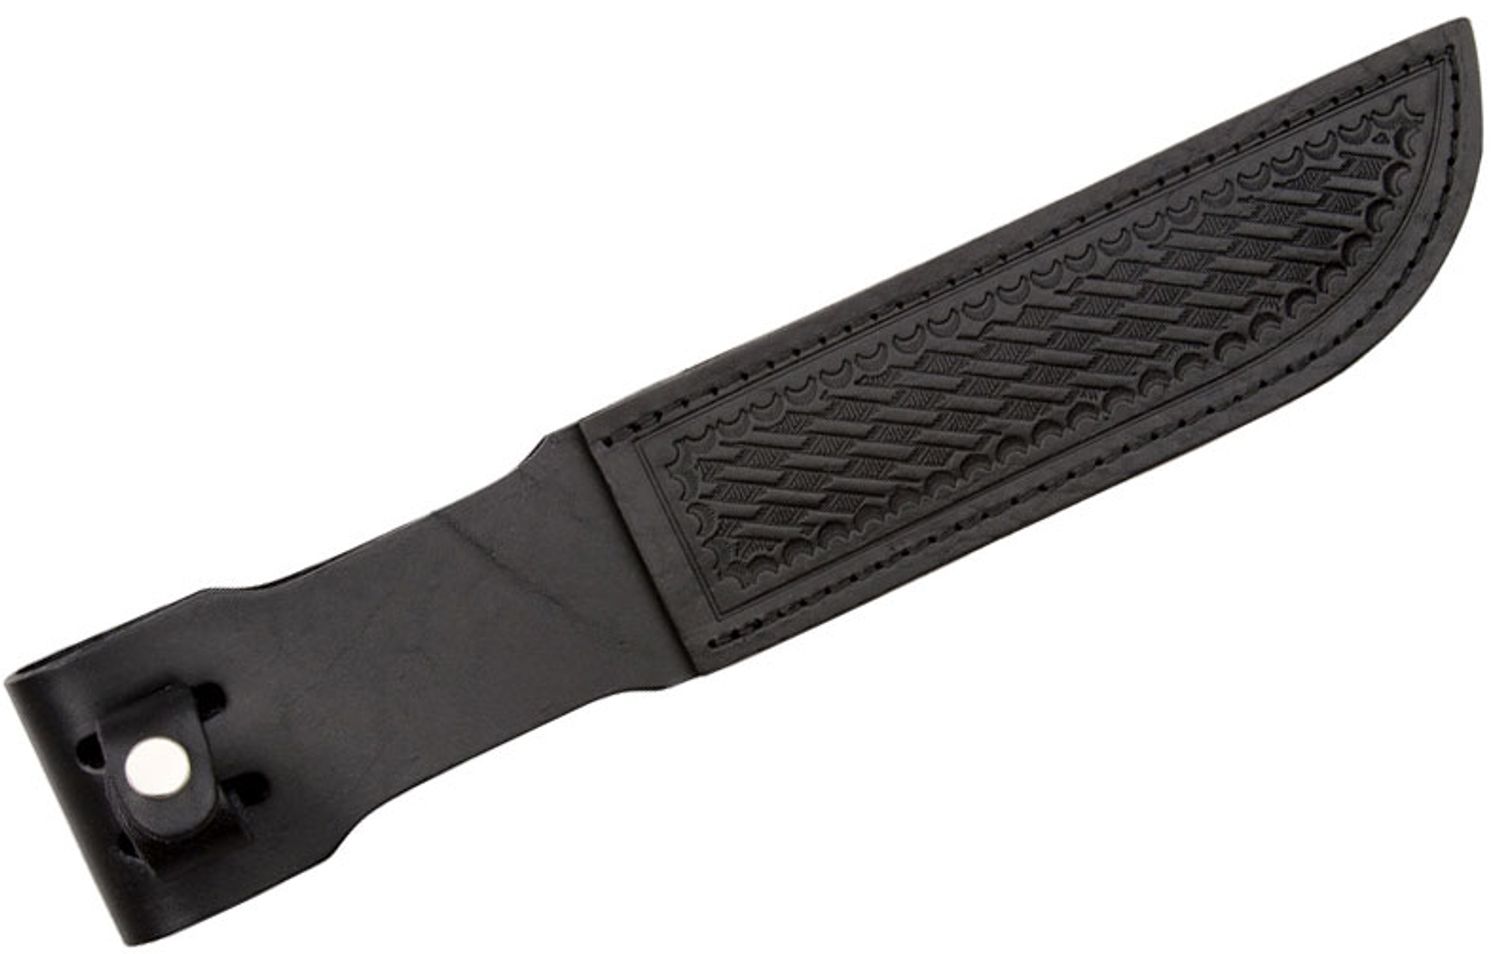 Sheath --- Leather - Black - (4 inch blades)